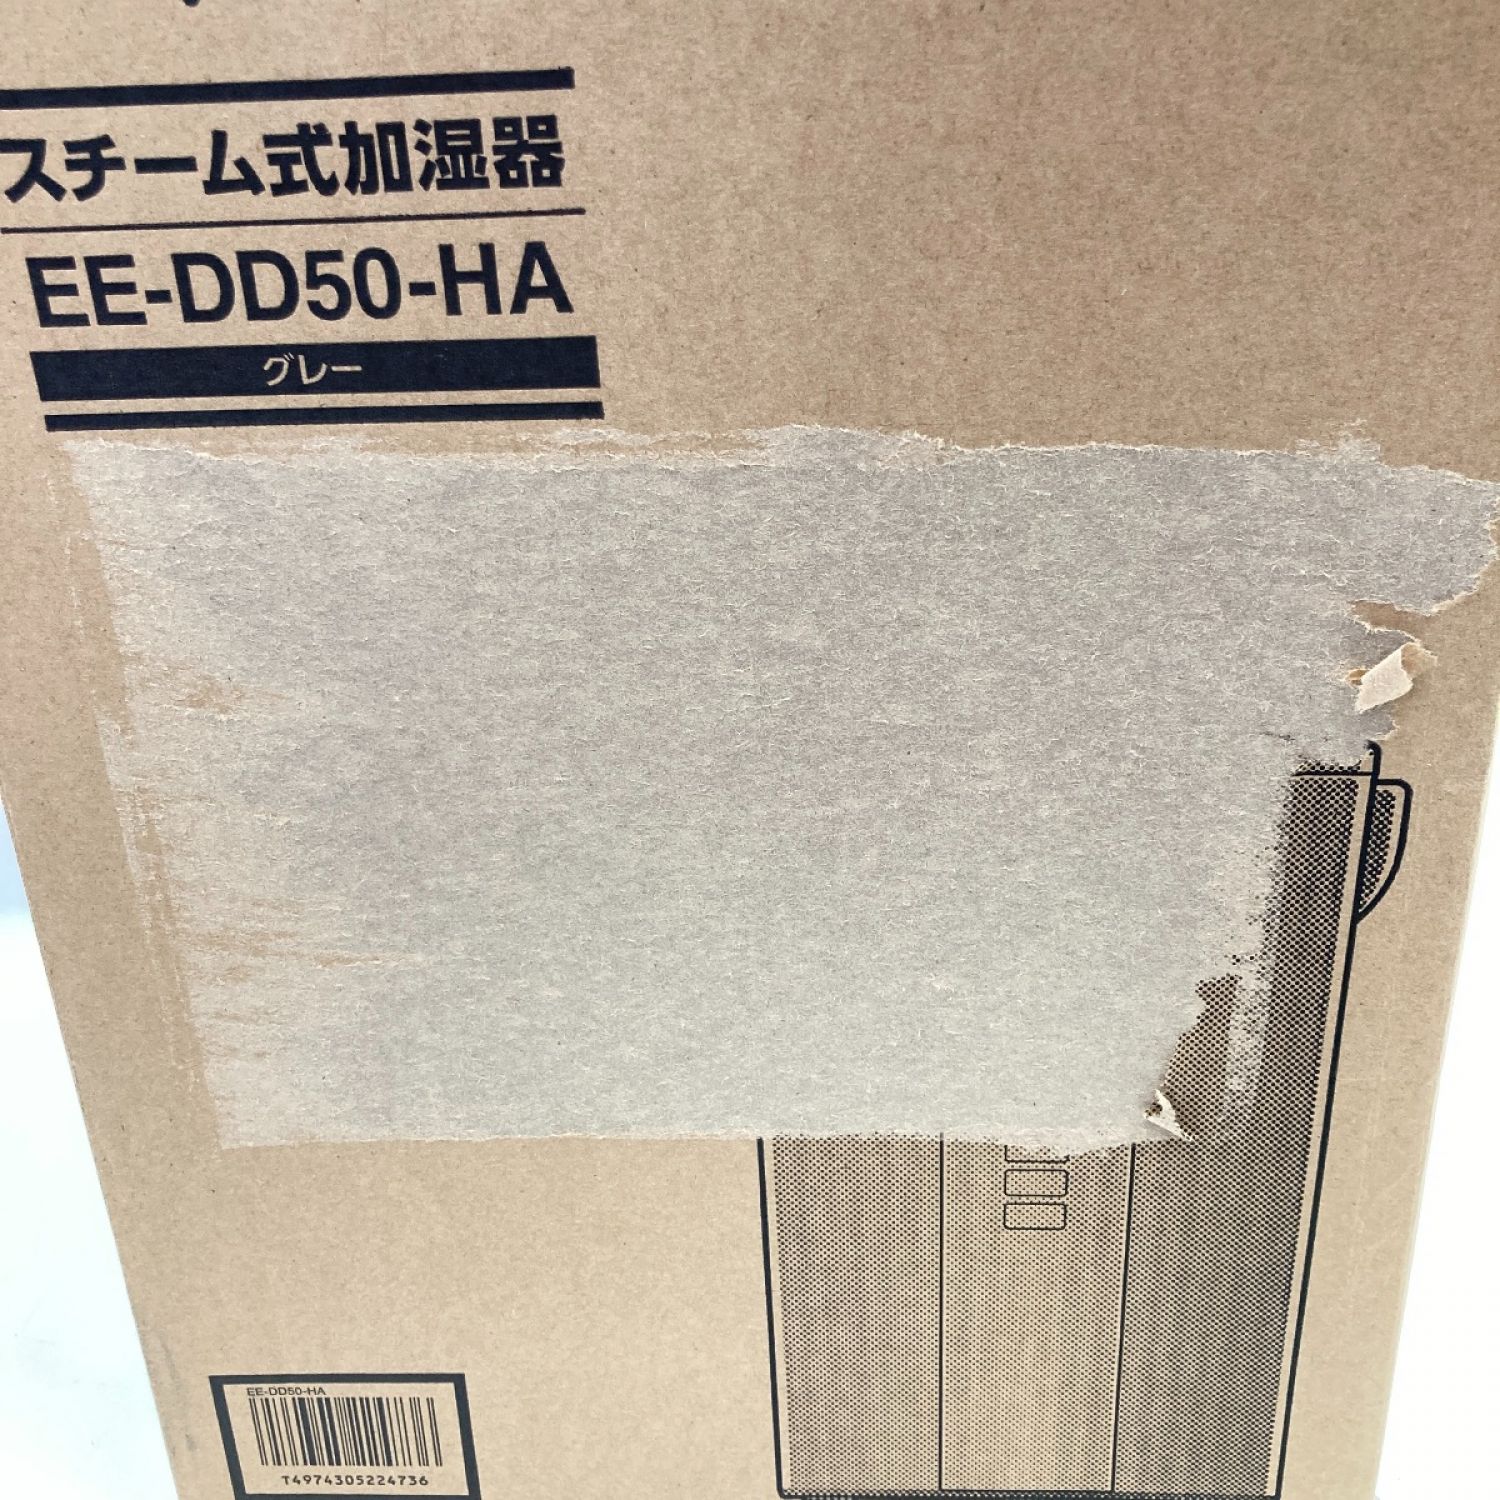 中古】 ZOJIRUSHI CORPORATION 象印 スチーム式加湿器 EE-DD50-HA